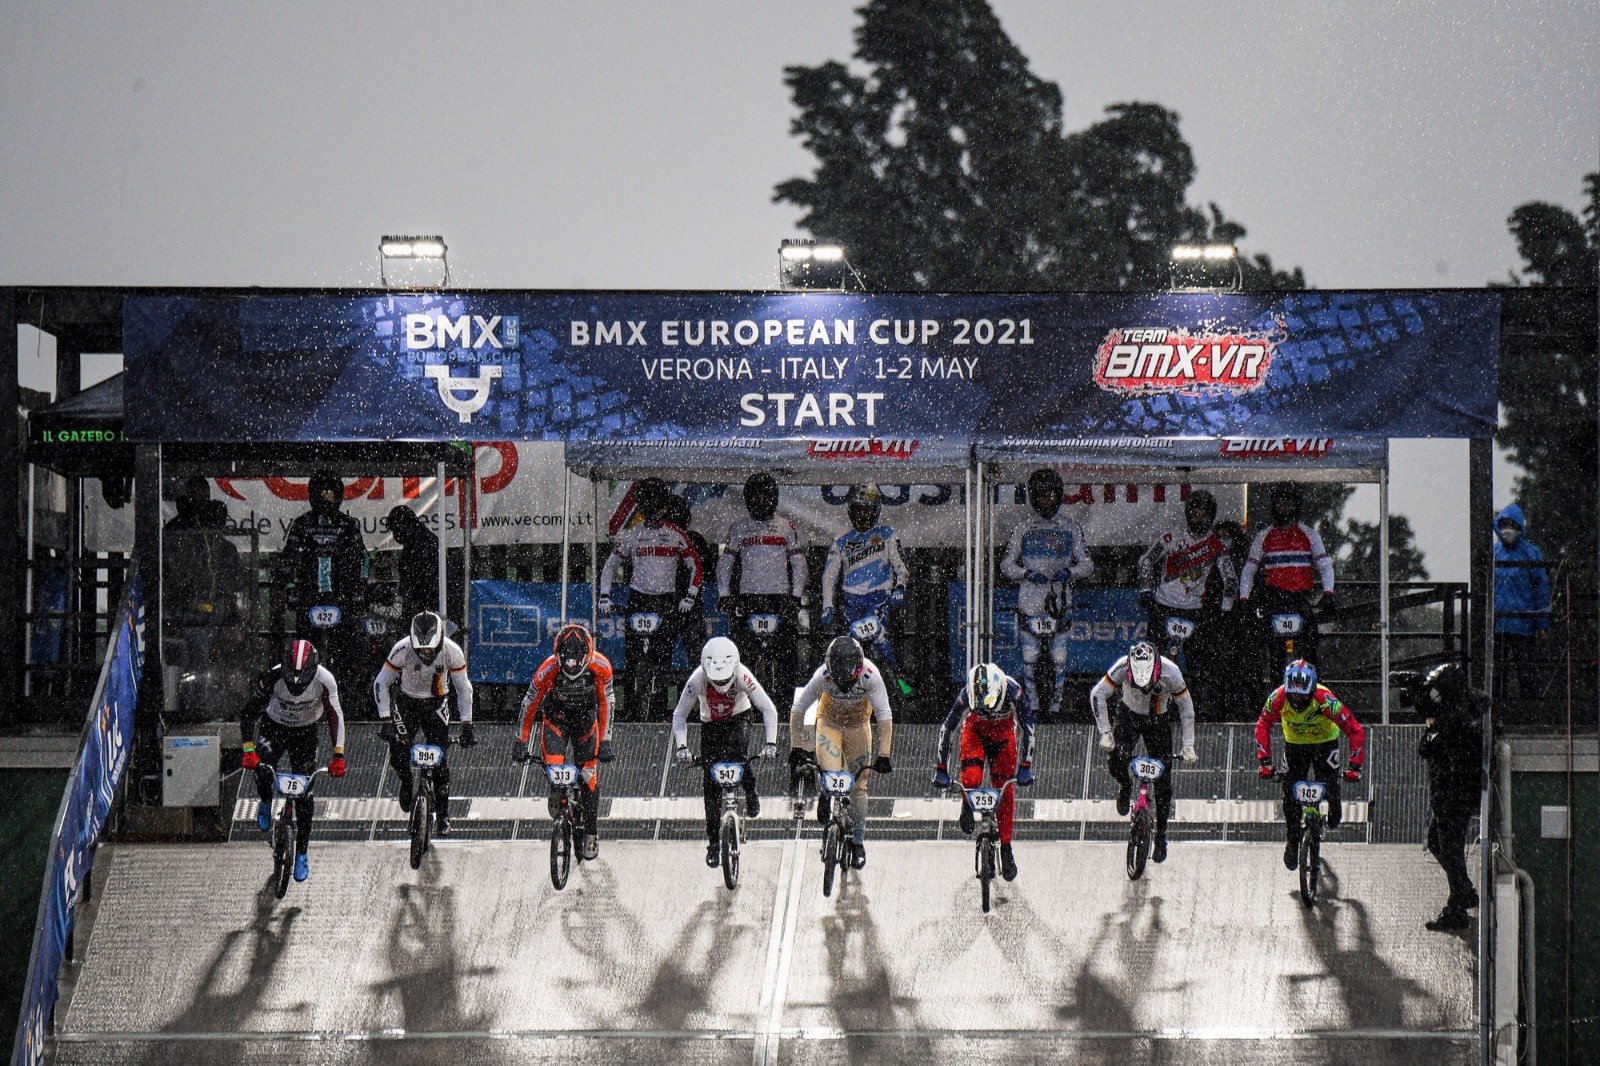 Coppa del Mondo BMX a Verona, 13 azzurri in gara. In palio gli ultimi punti per la qualificazione olimpica